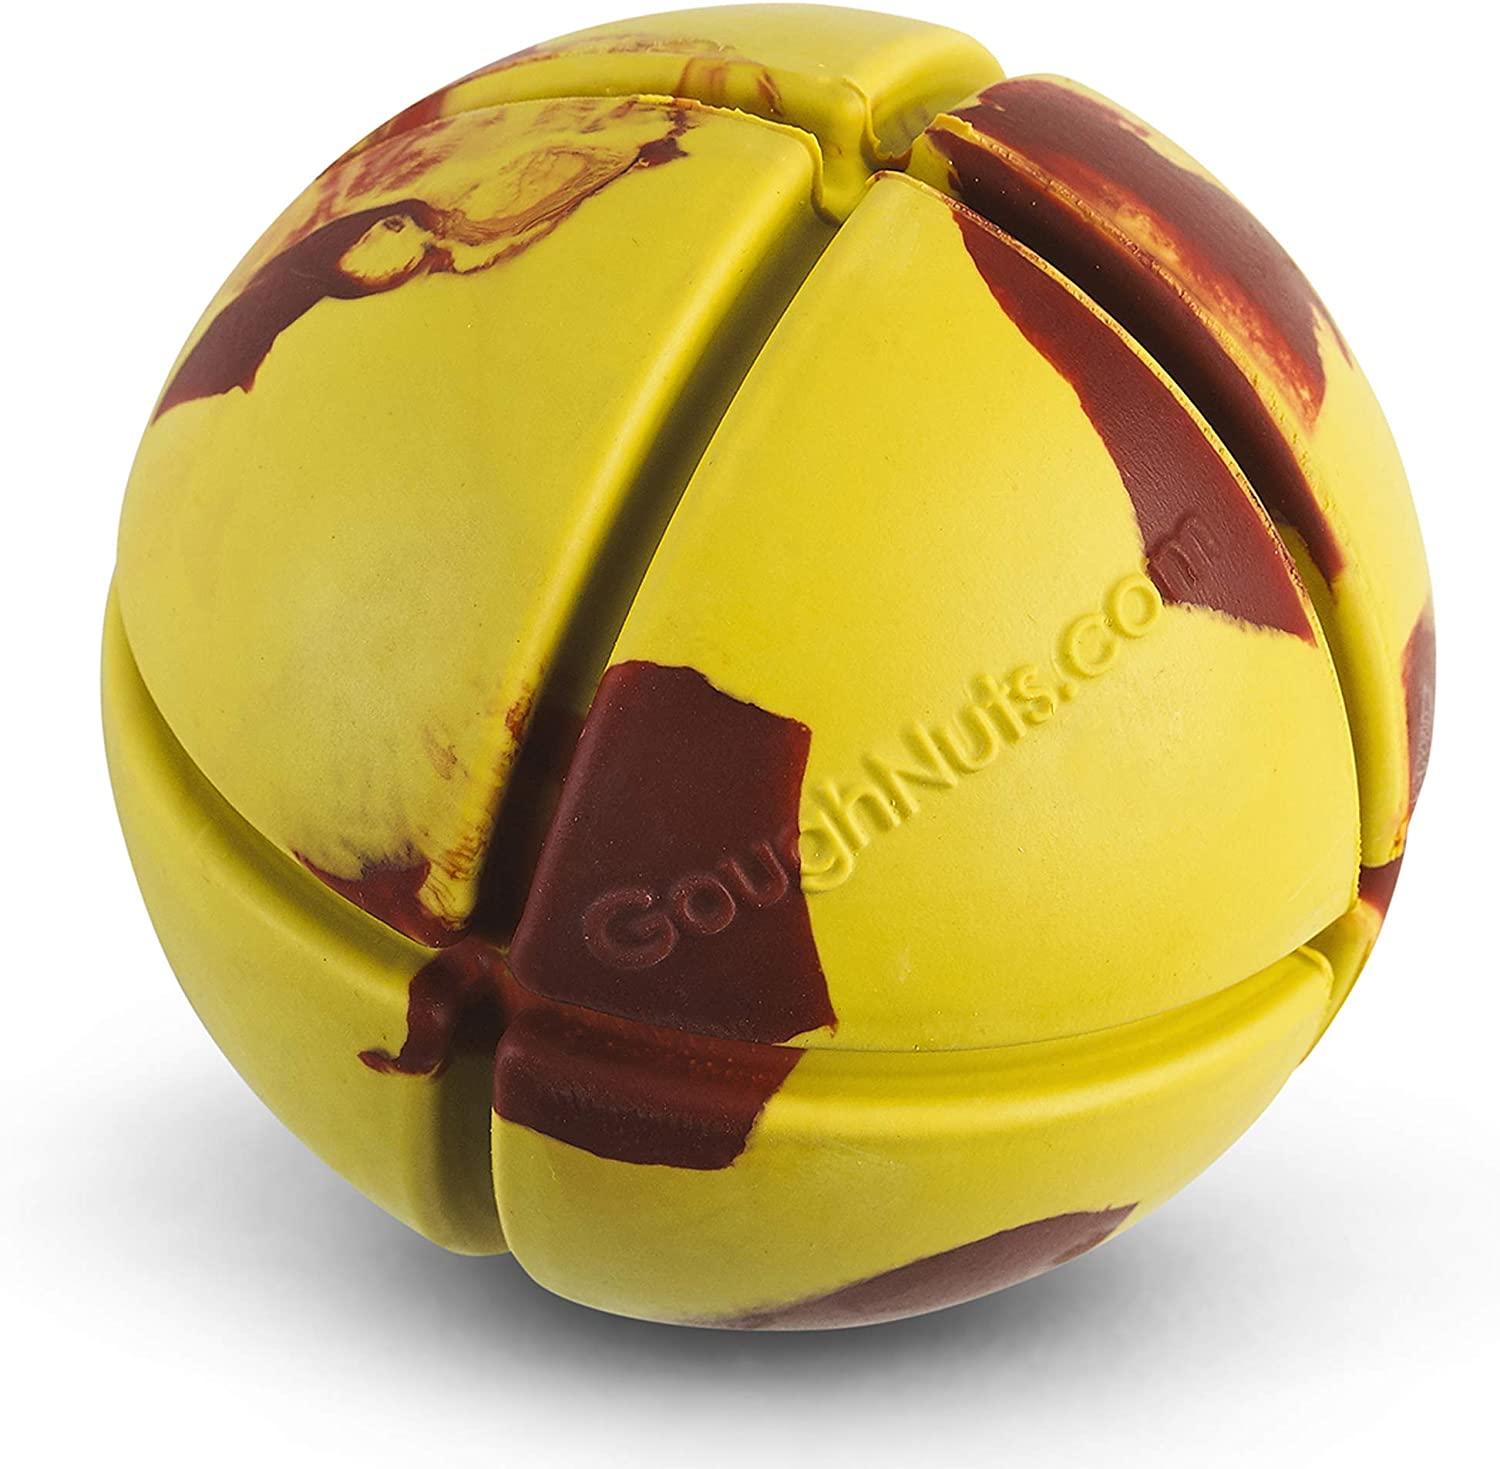 GoughNuts Interactive Tough Ball Toy Coloured - Yellow